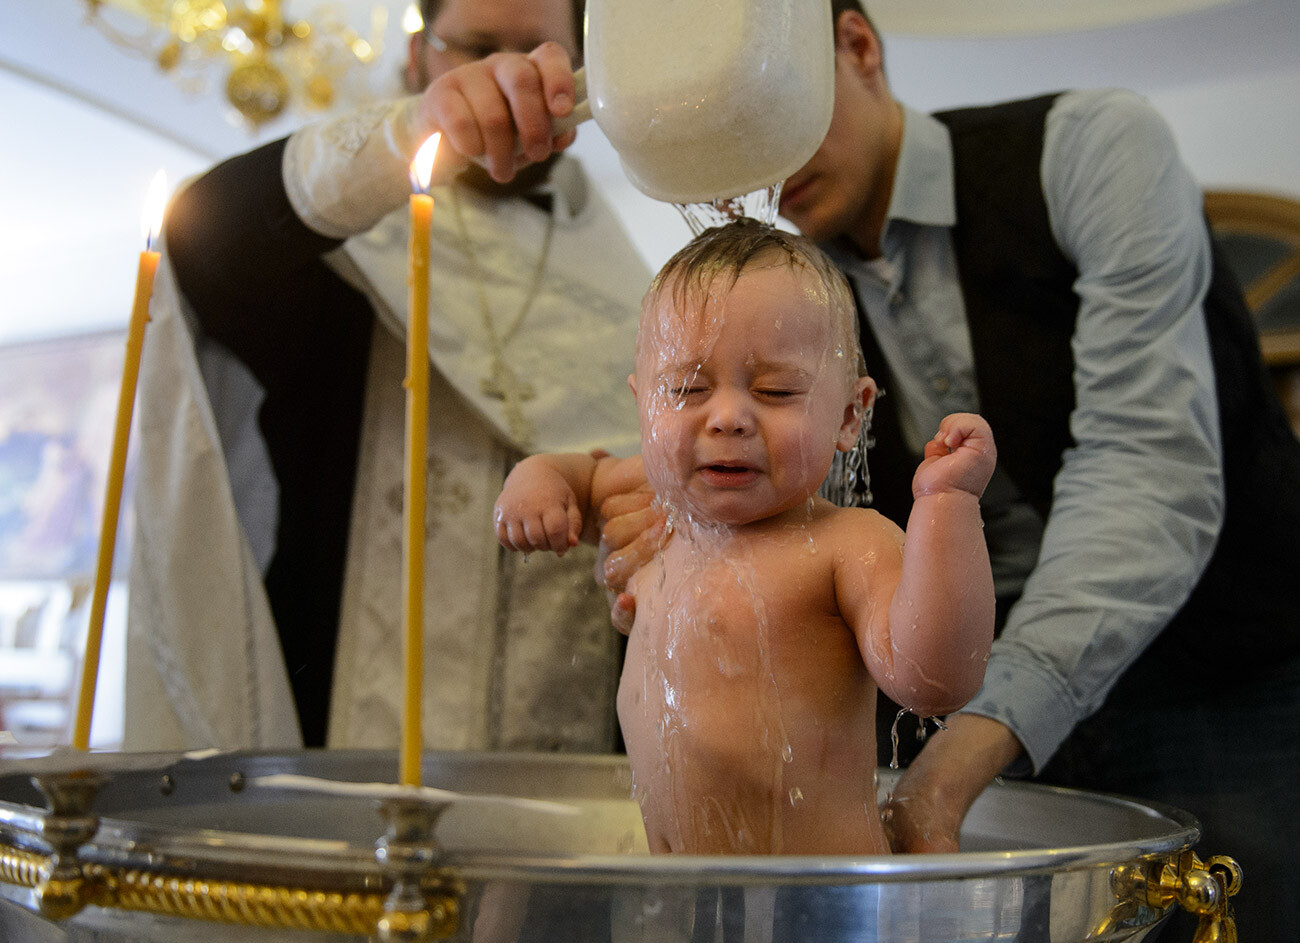 Il Battesimo di un bambino nella Chiesa ortodossa russa
